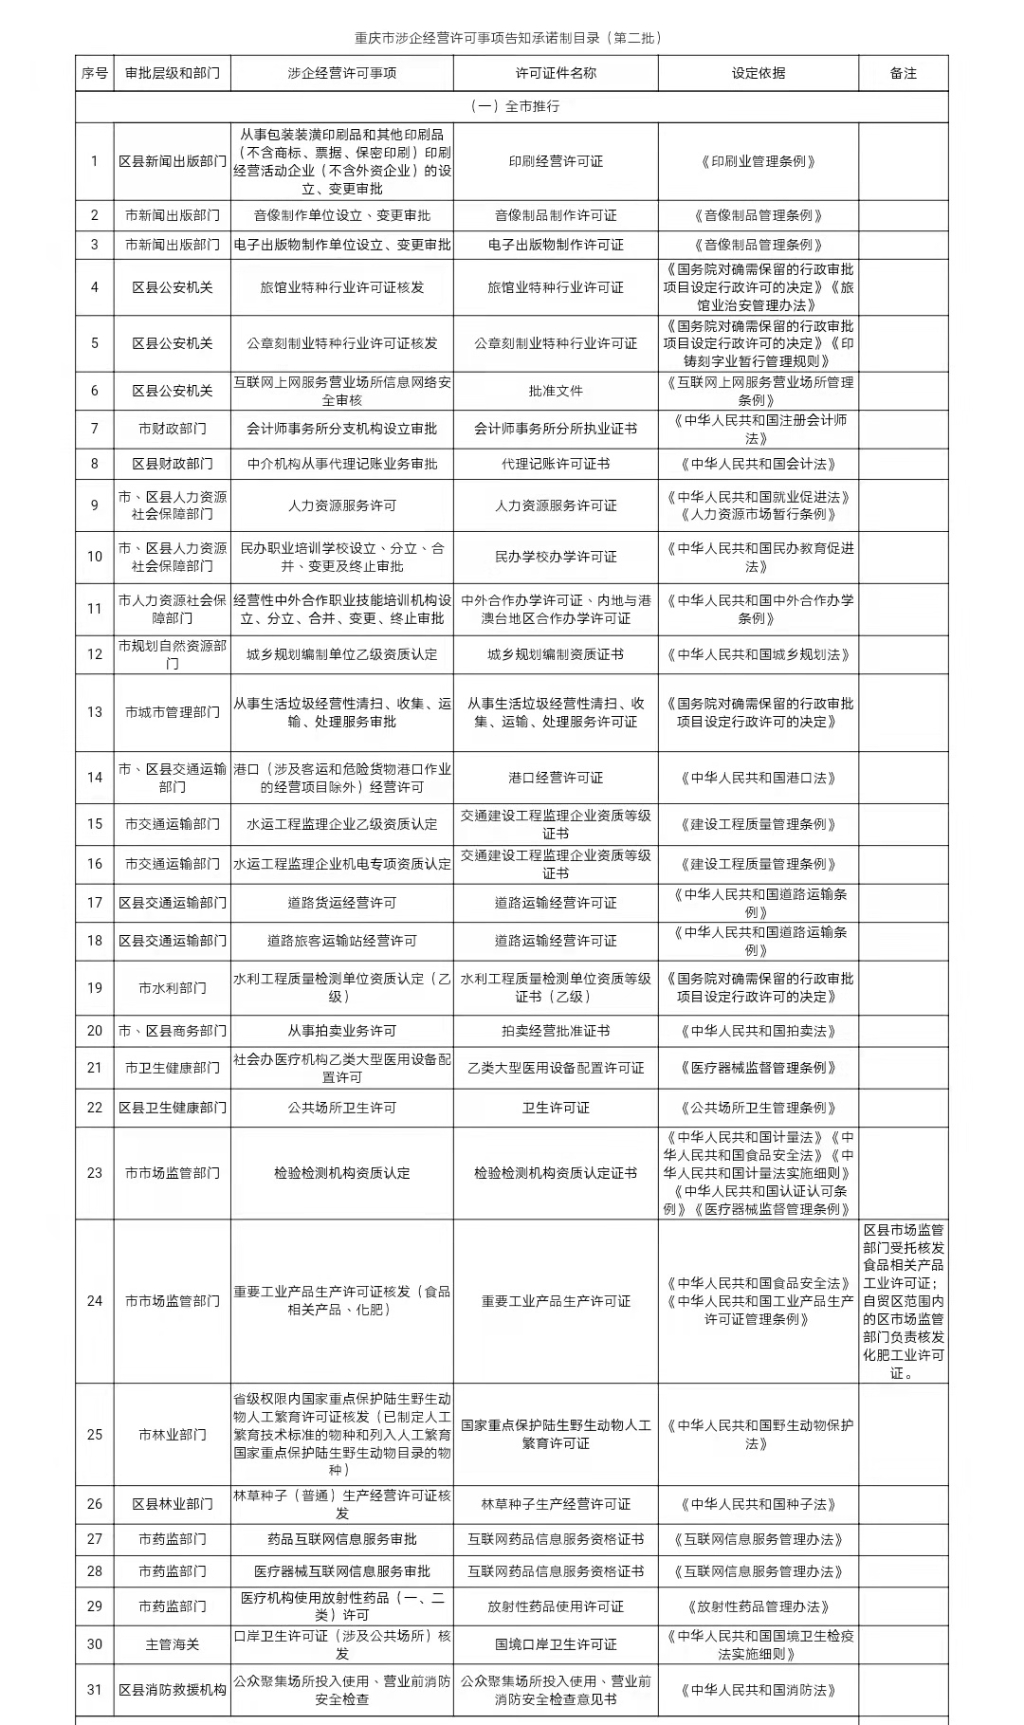 重庆市涉企经营许可事项告知承诺制目录（第二批）。市发展改革委 供图 华龙网-新重庆客户端 发